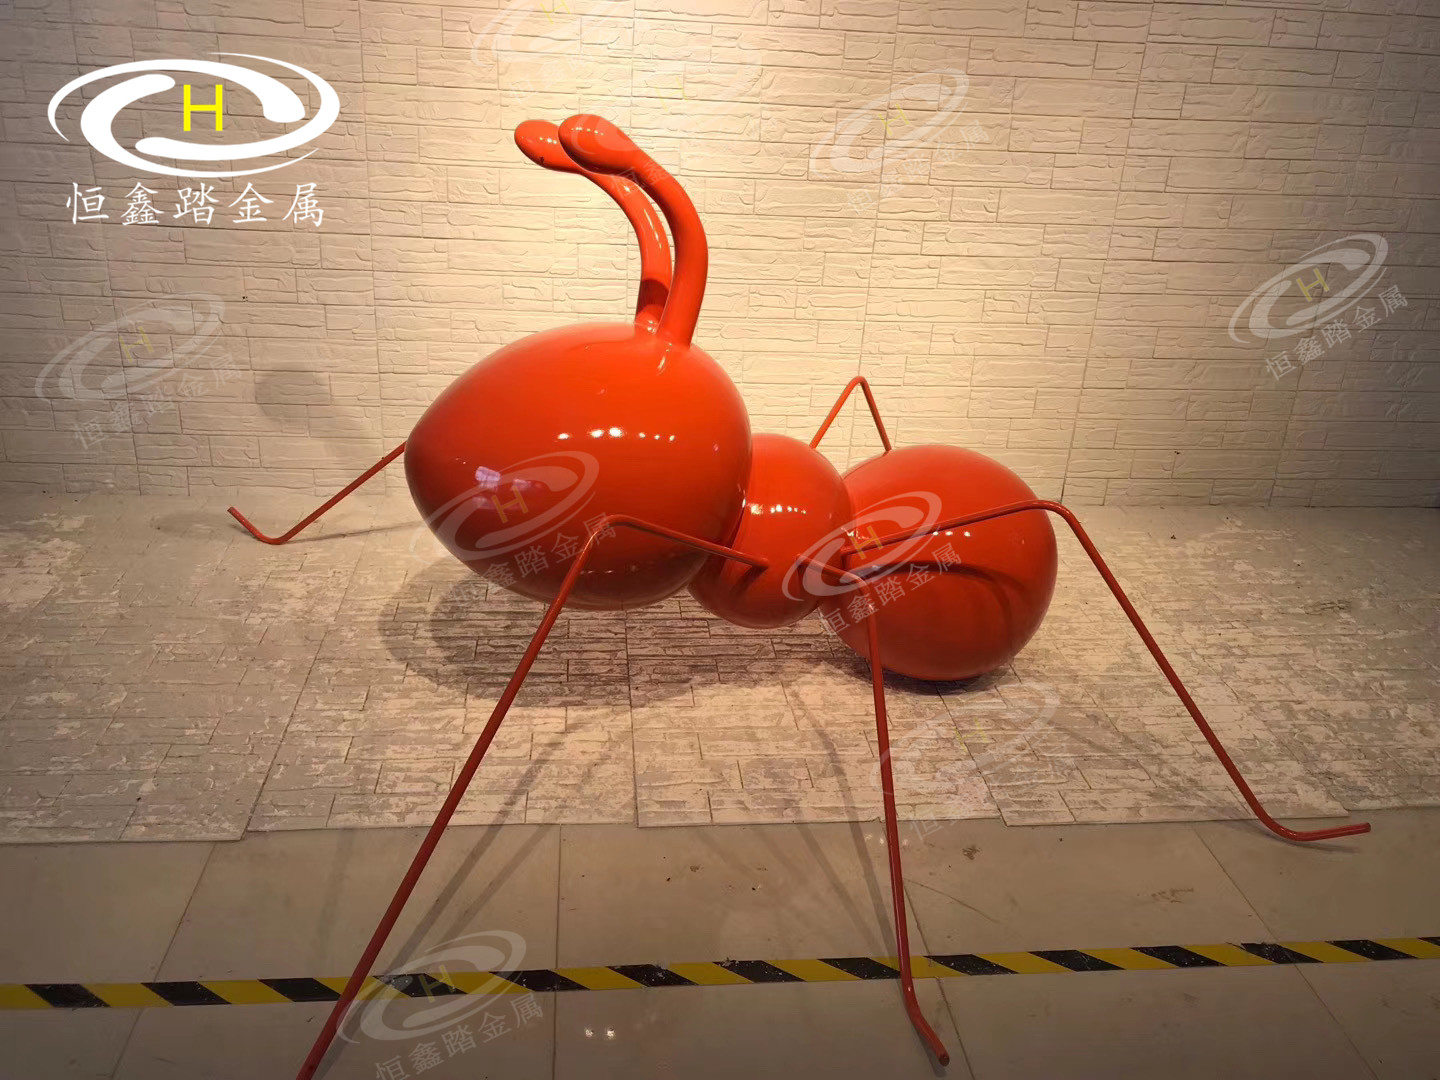 上海浦东广场上红色不锈钢蚂蚁雕塑定做不锈钢蚂蚁景观雕塑